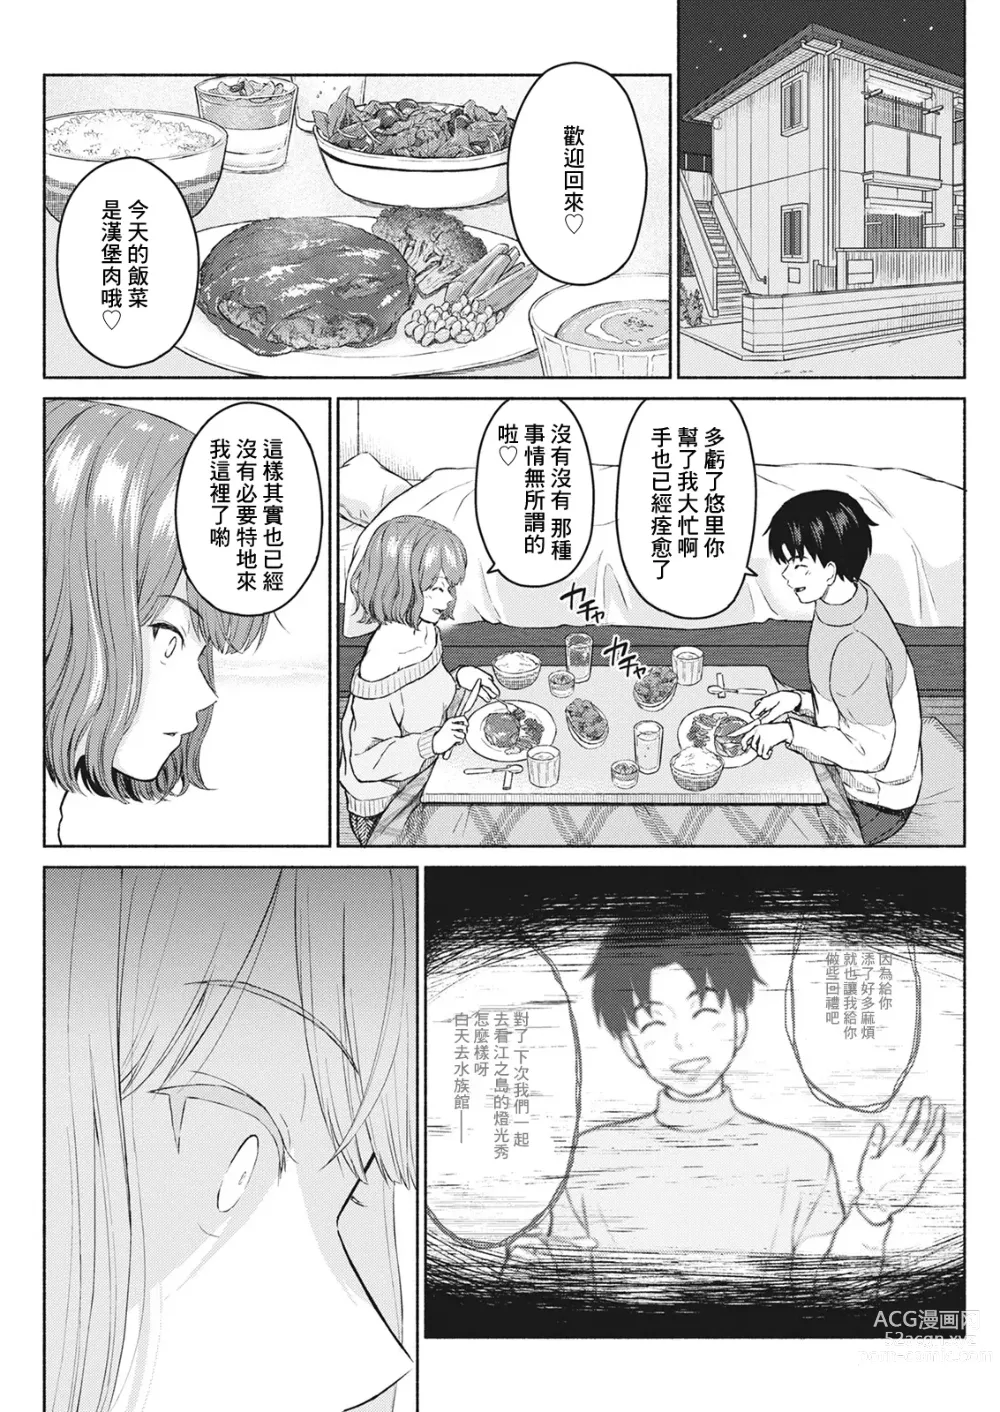 Page 12 of manga Sukisuki Daisuki Chouchou Aishiteru